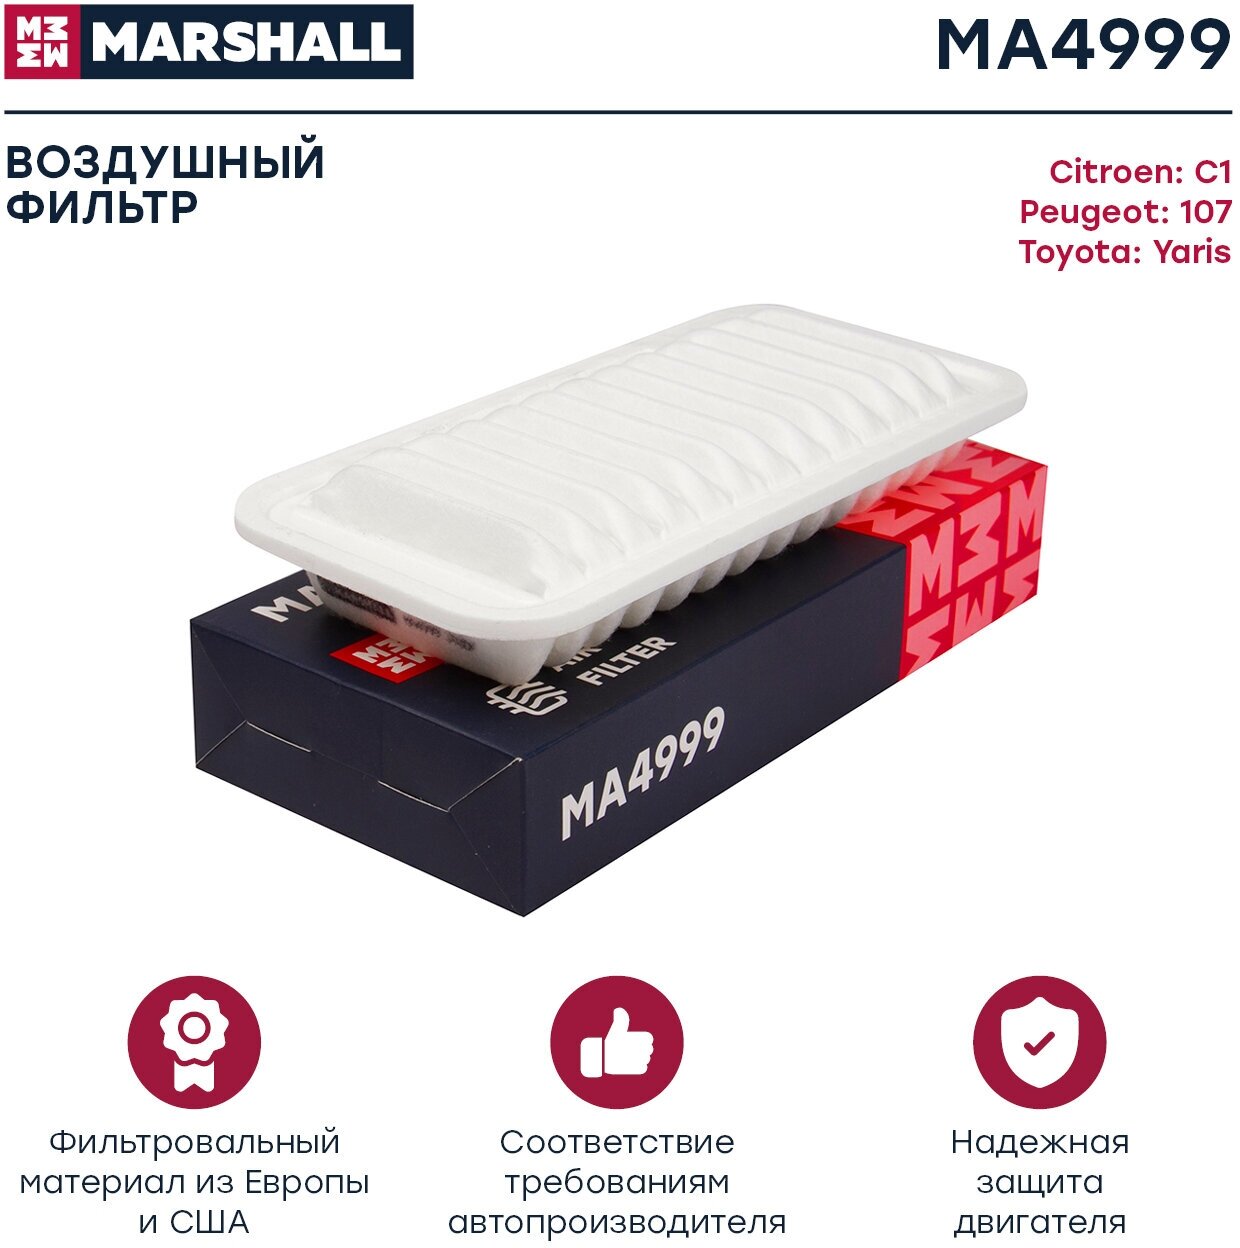 Фильтр воздушный, Marshall MA4999